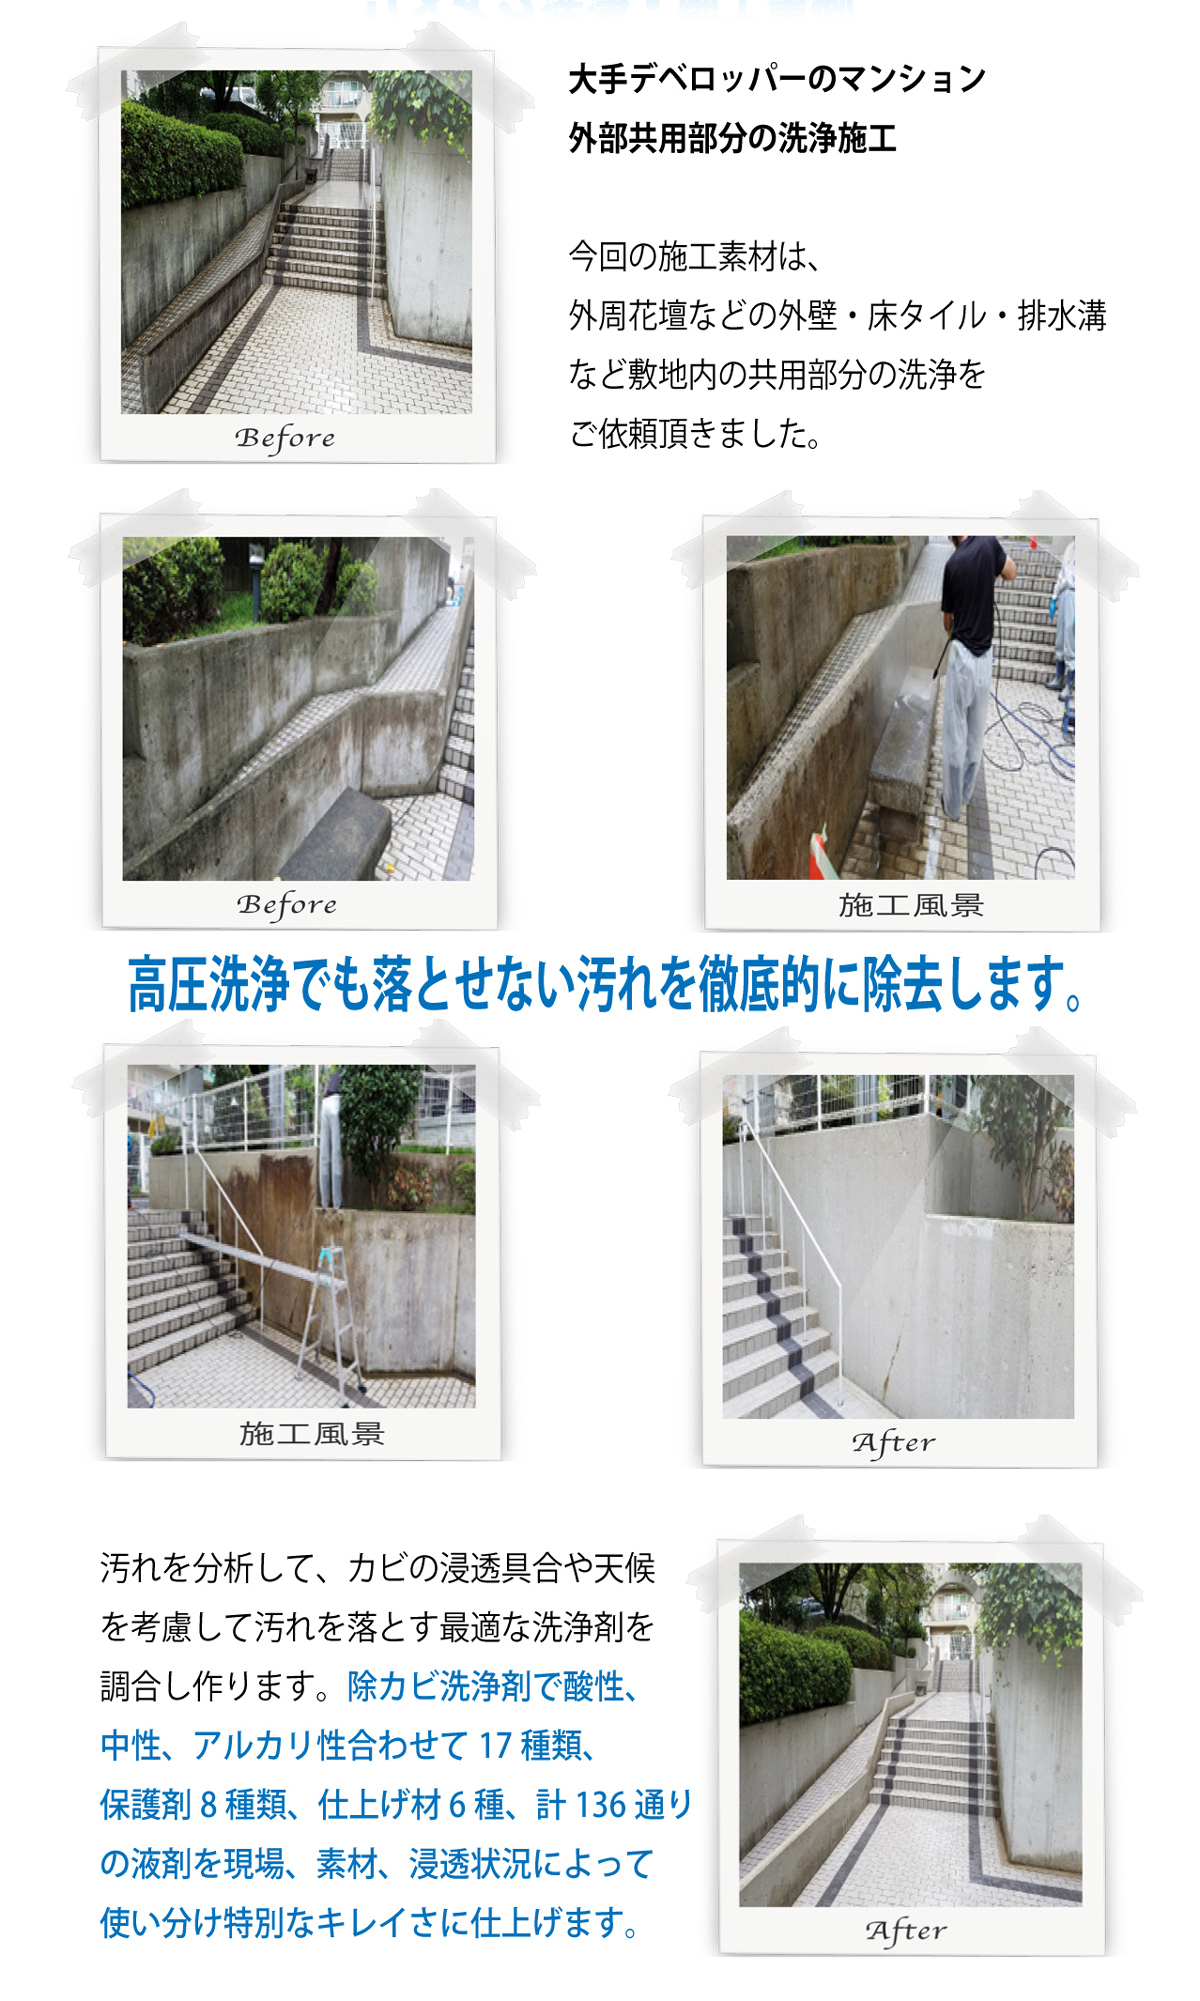 大阪の外壁洗浄業者、外壁洗浄.com、リメイク洗浄の施工事例、マンション共有外壁